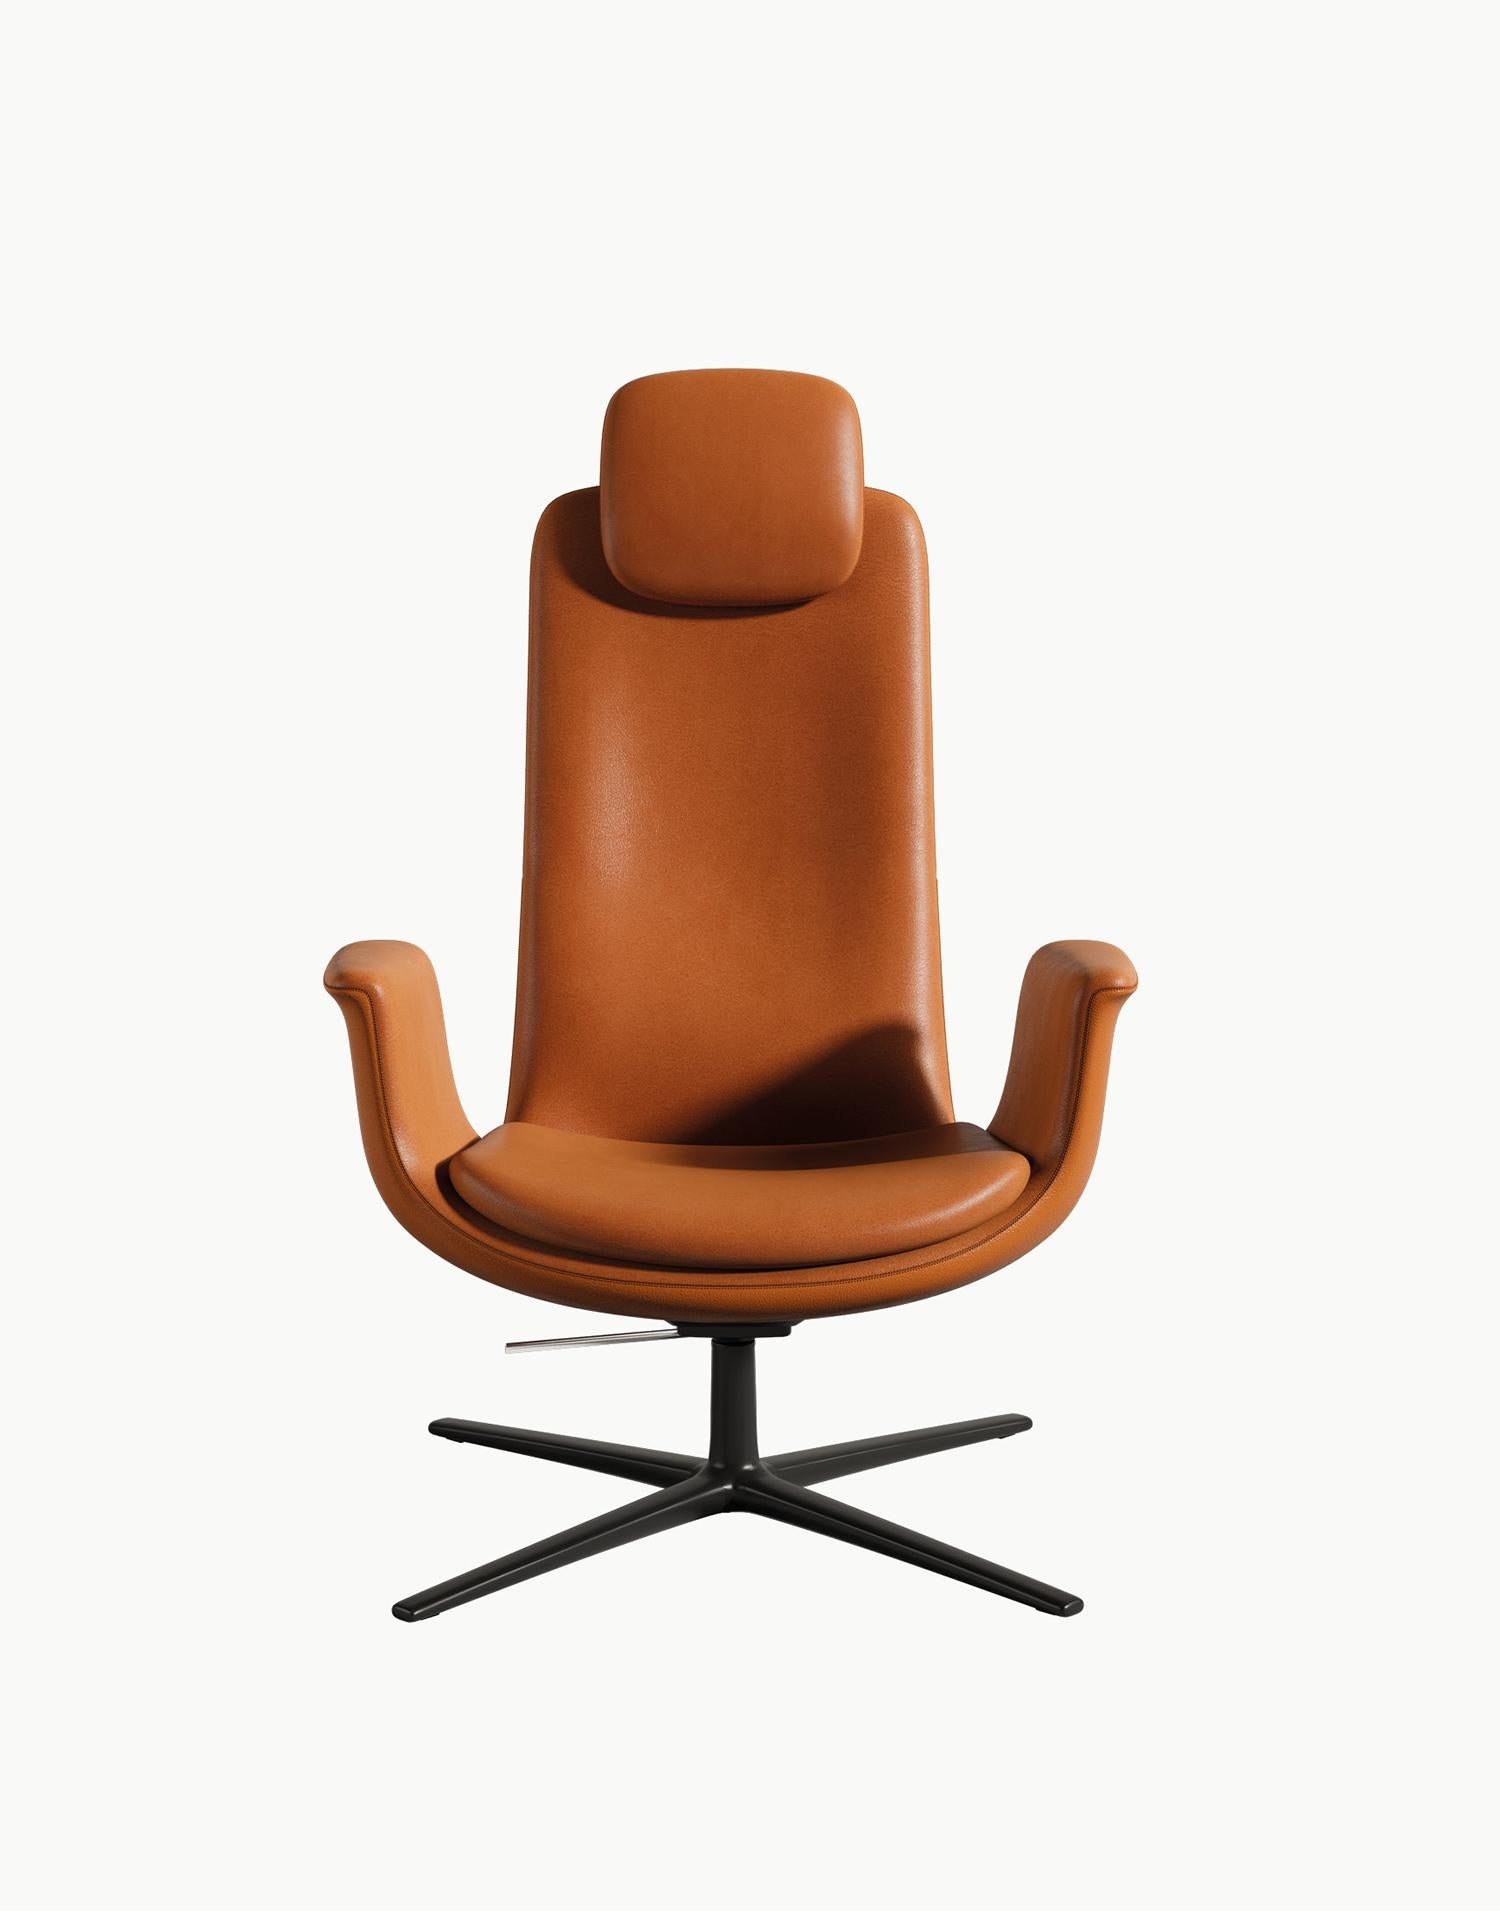 Odyssey ist ein außergewöhnlicher Sessel, entworfen von Eugeni Quitllet für BD. Das Zusammentreffen von erdgebundenen ergonomischen Formen, Komfort und phantasievollem Höhenflug.

Kleine Kopfstütze
75 x 81 x H. 107 cm
30 x 32 x h.42